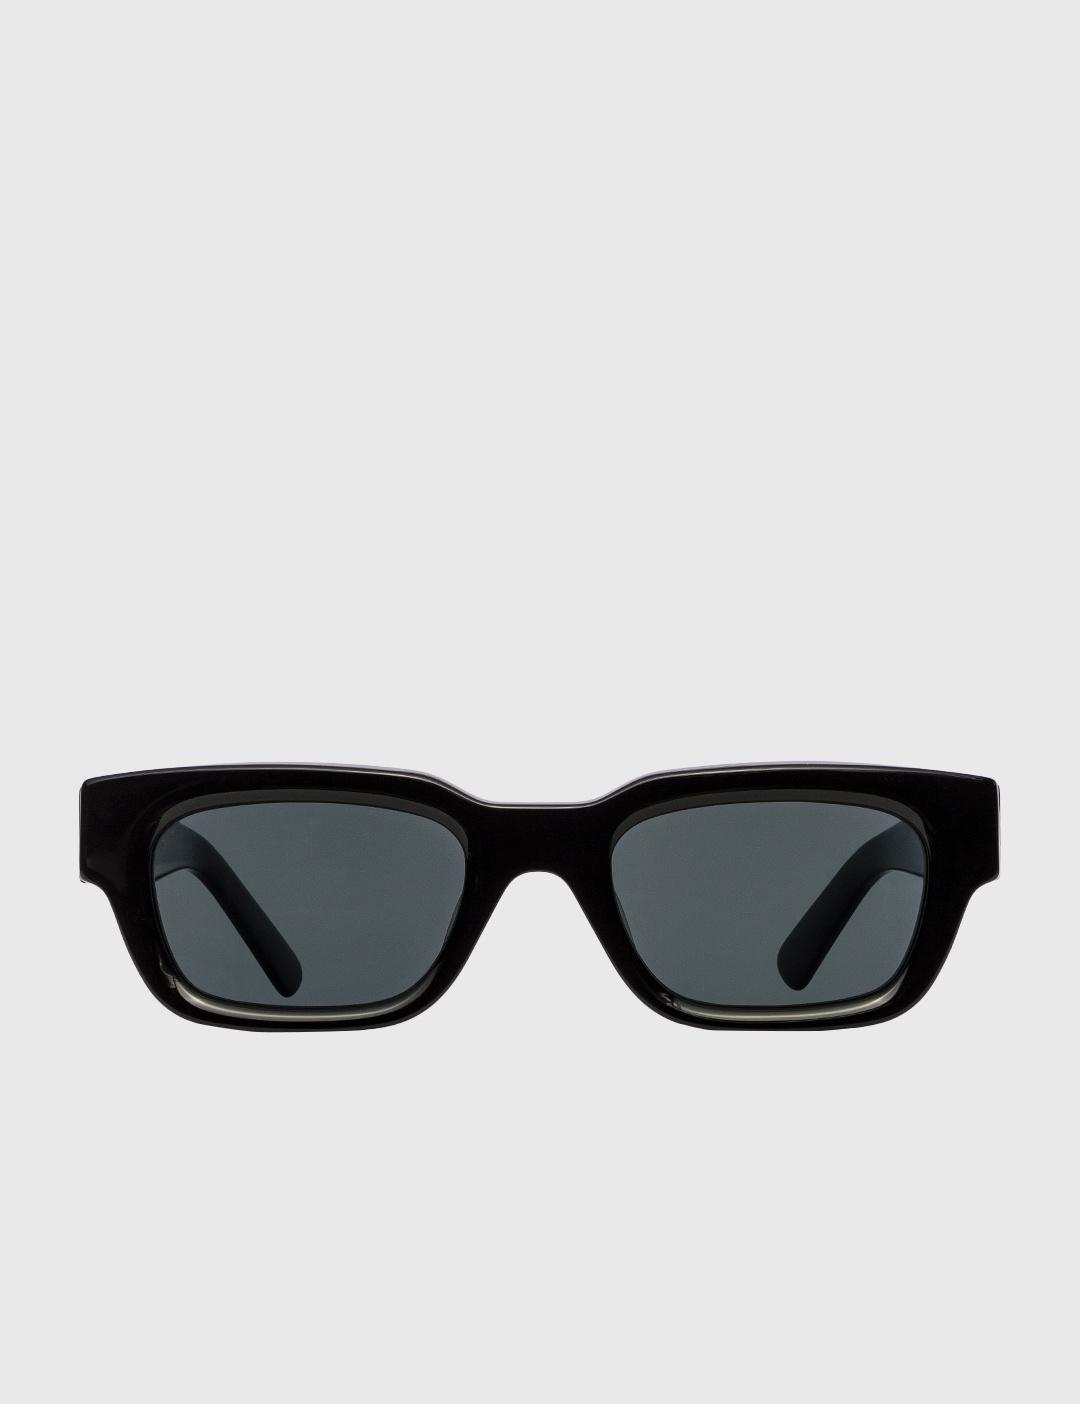 Zed Sunglasses by AKILA